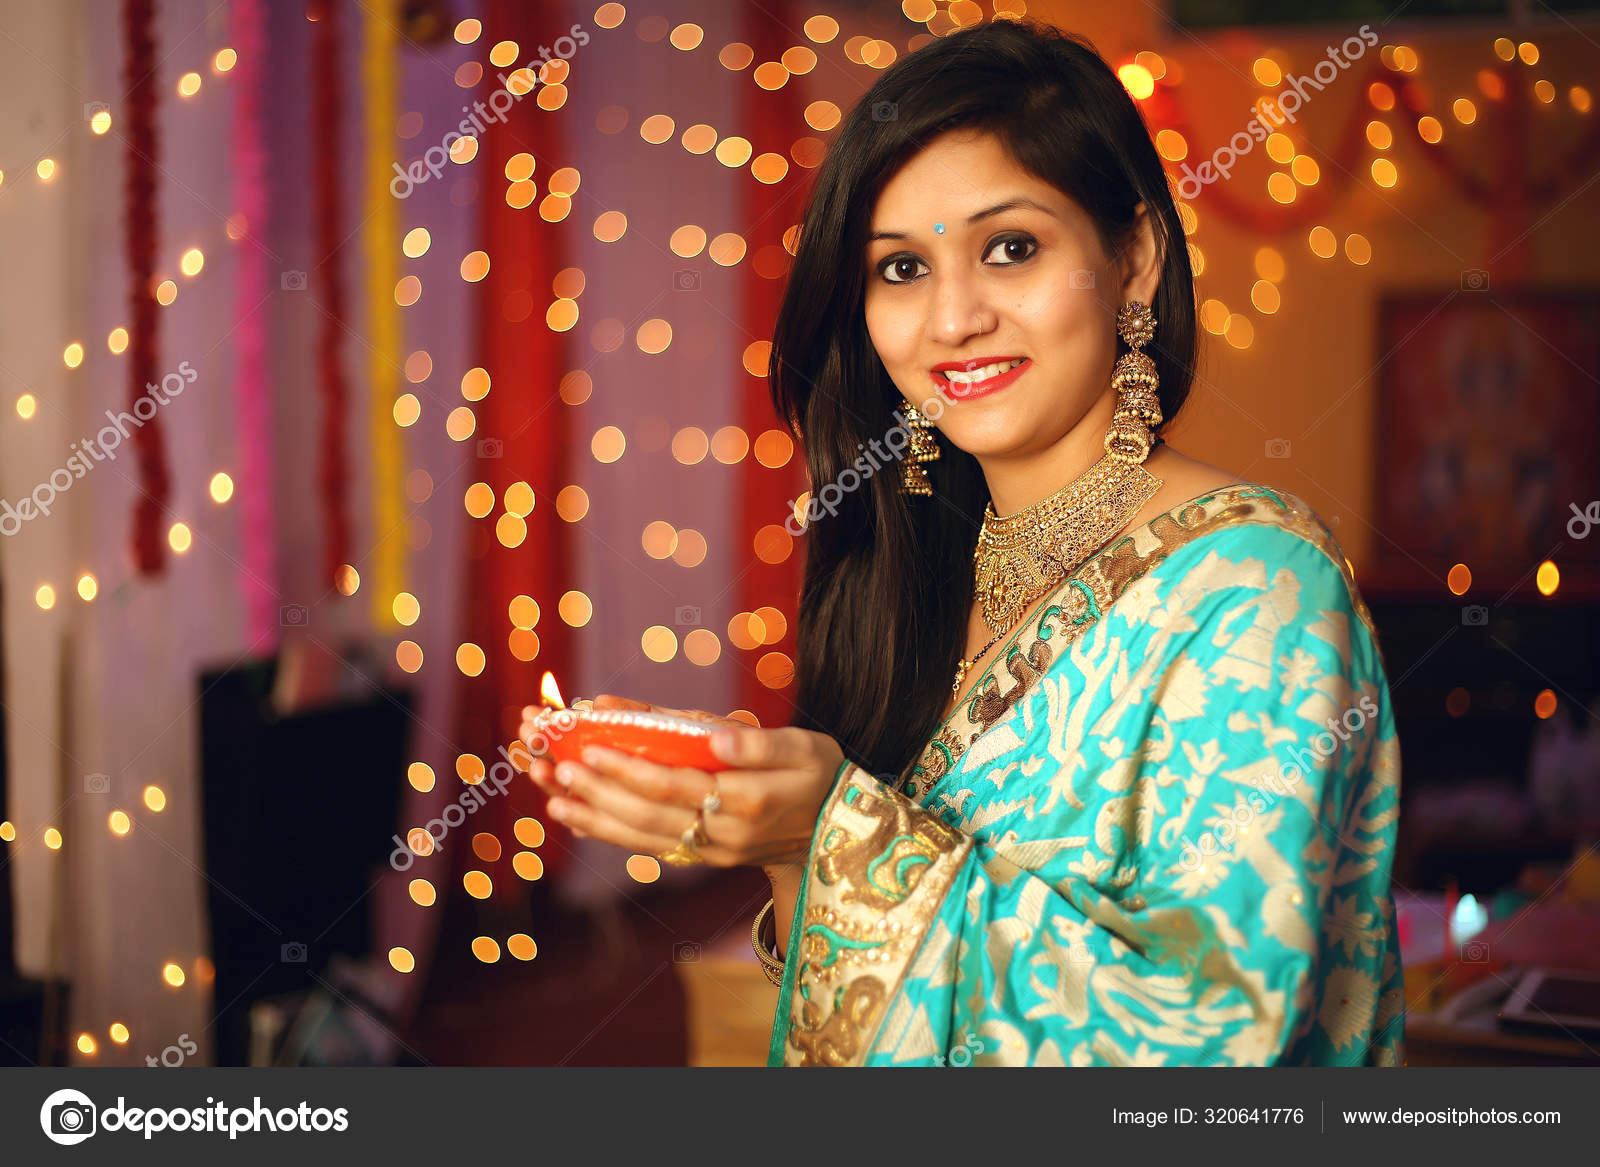 Diwali Selfie Poses Ideas for Girls/ Selfie Poses For Diwali / Photo Poses  Ideas for Diwali - YouTube